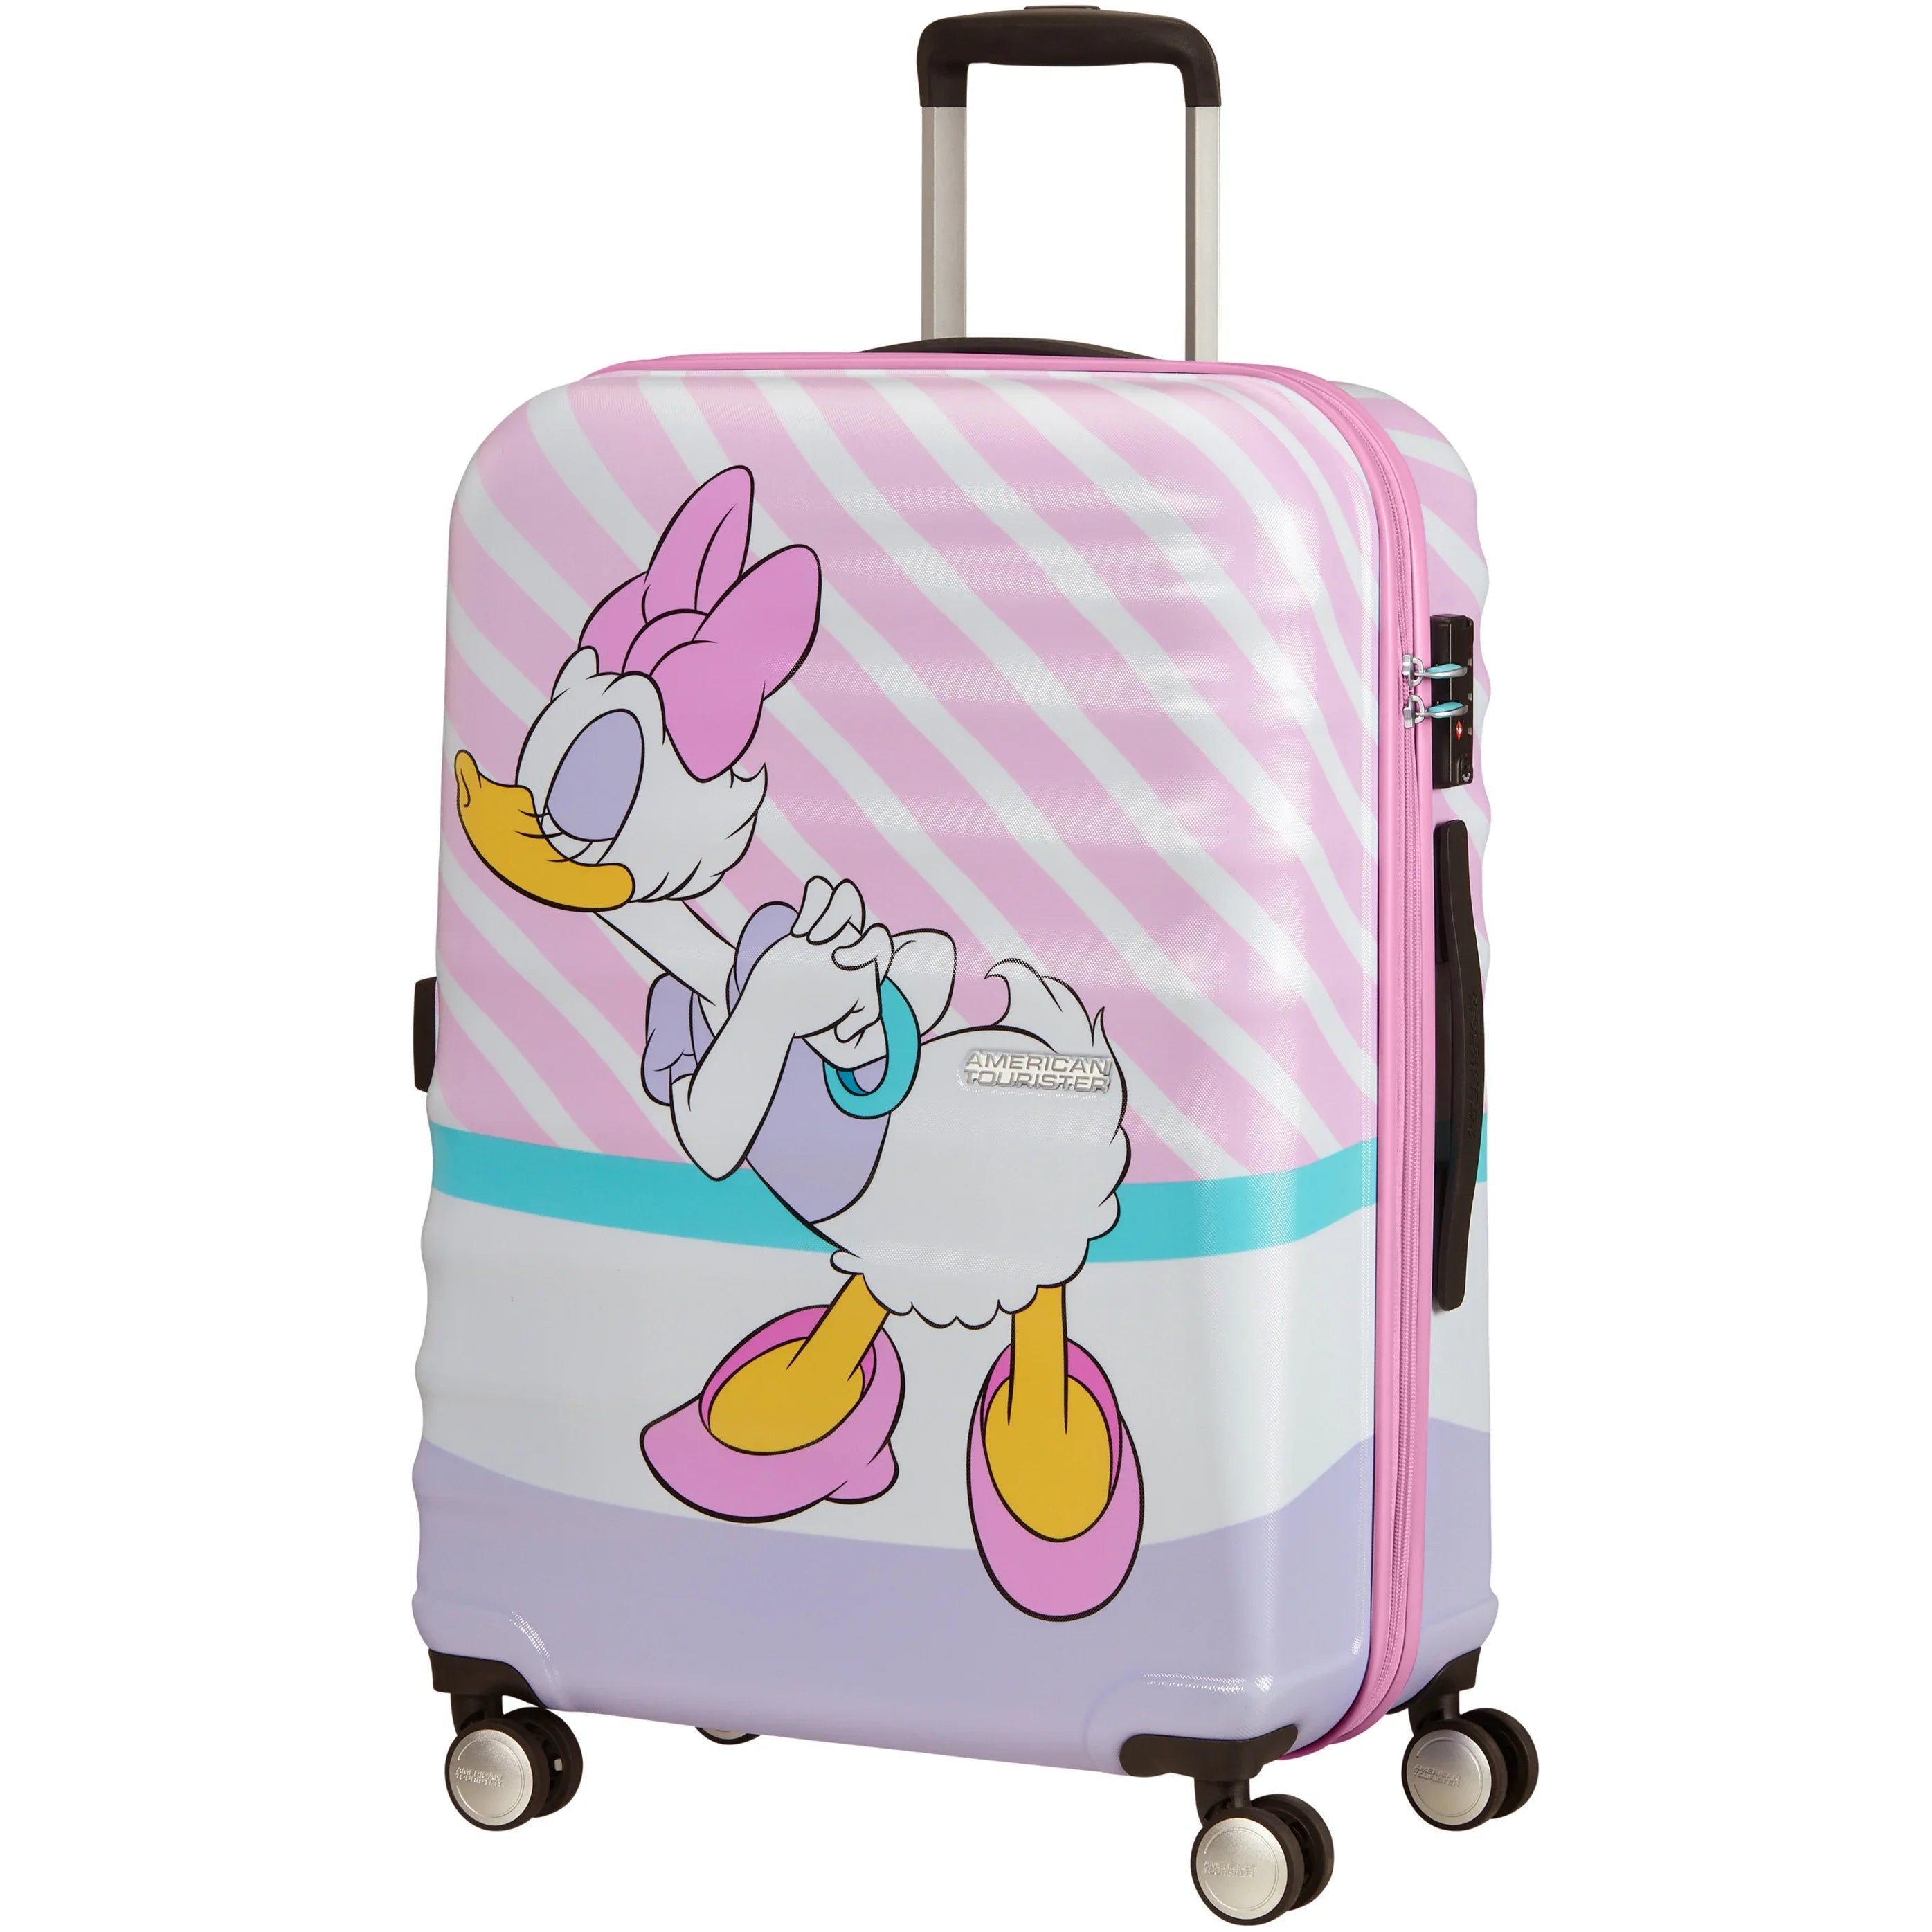 American Tourister Wavebreaker Disney 4-Rollen-Trolley 67 cm - daisy pink kiss